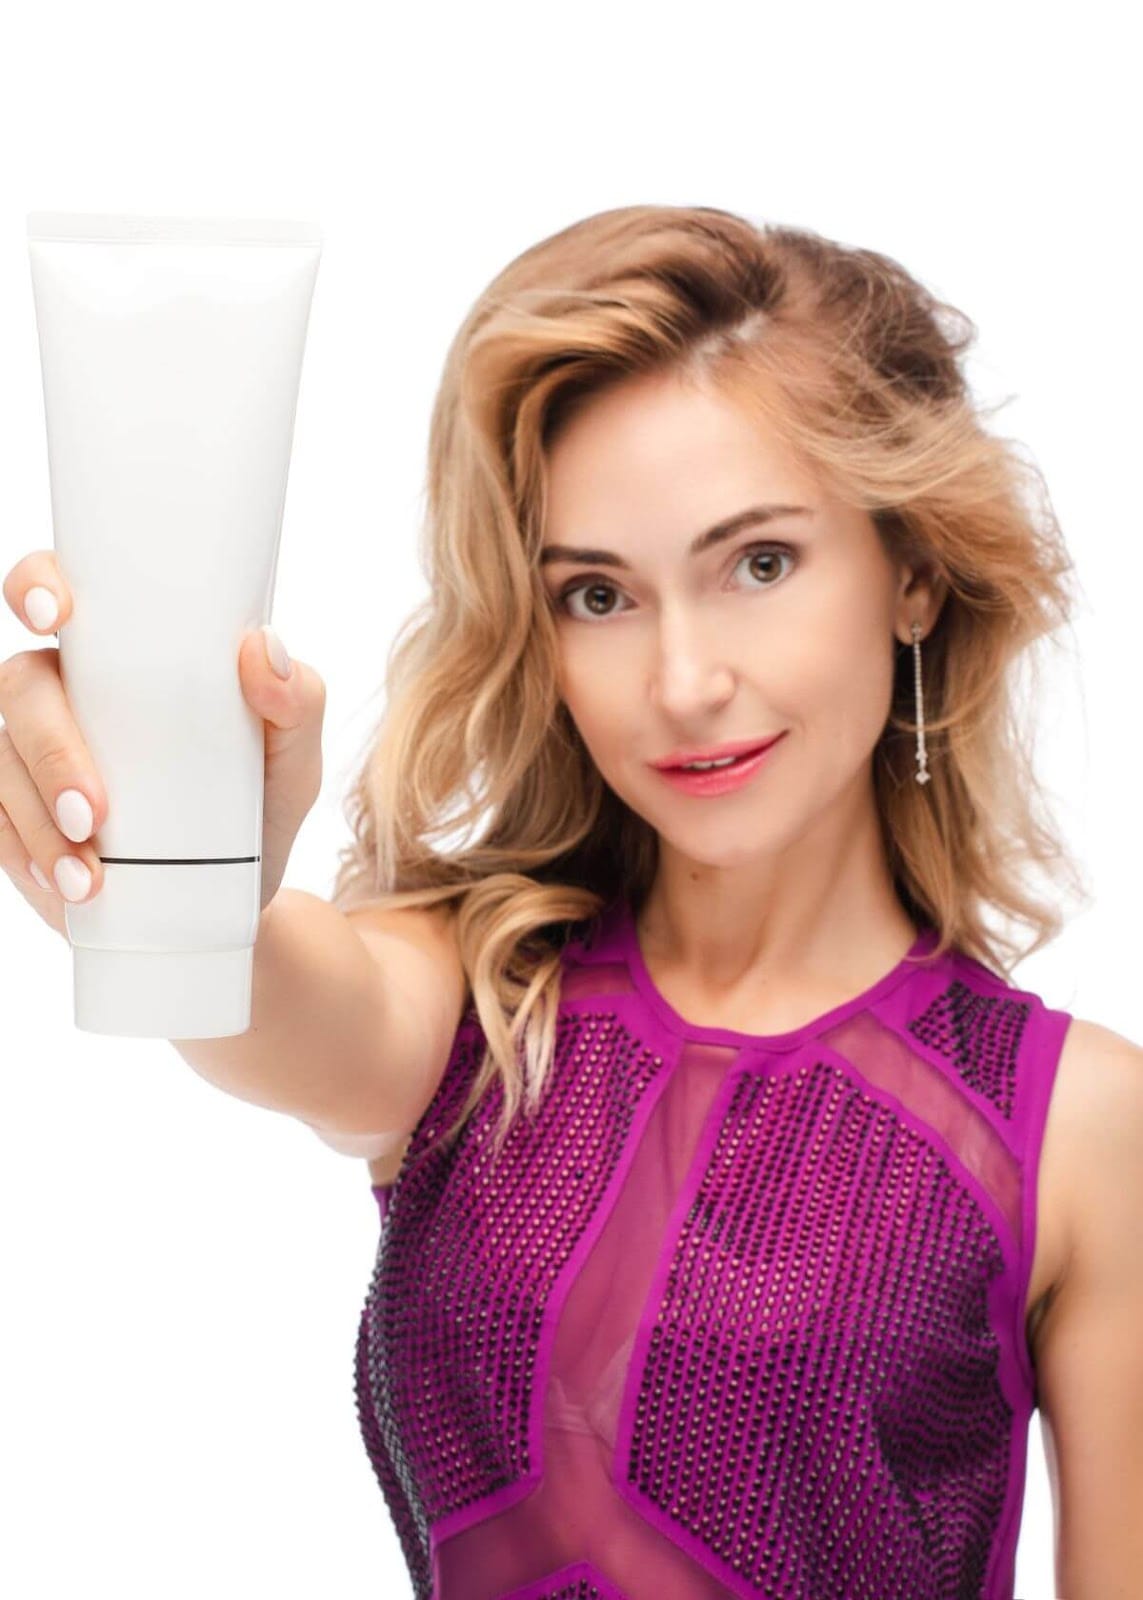 How to Apply Dry Shampoo on Keratin Treated Hair?